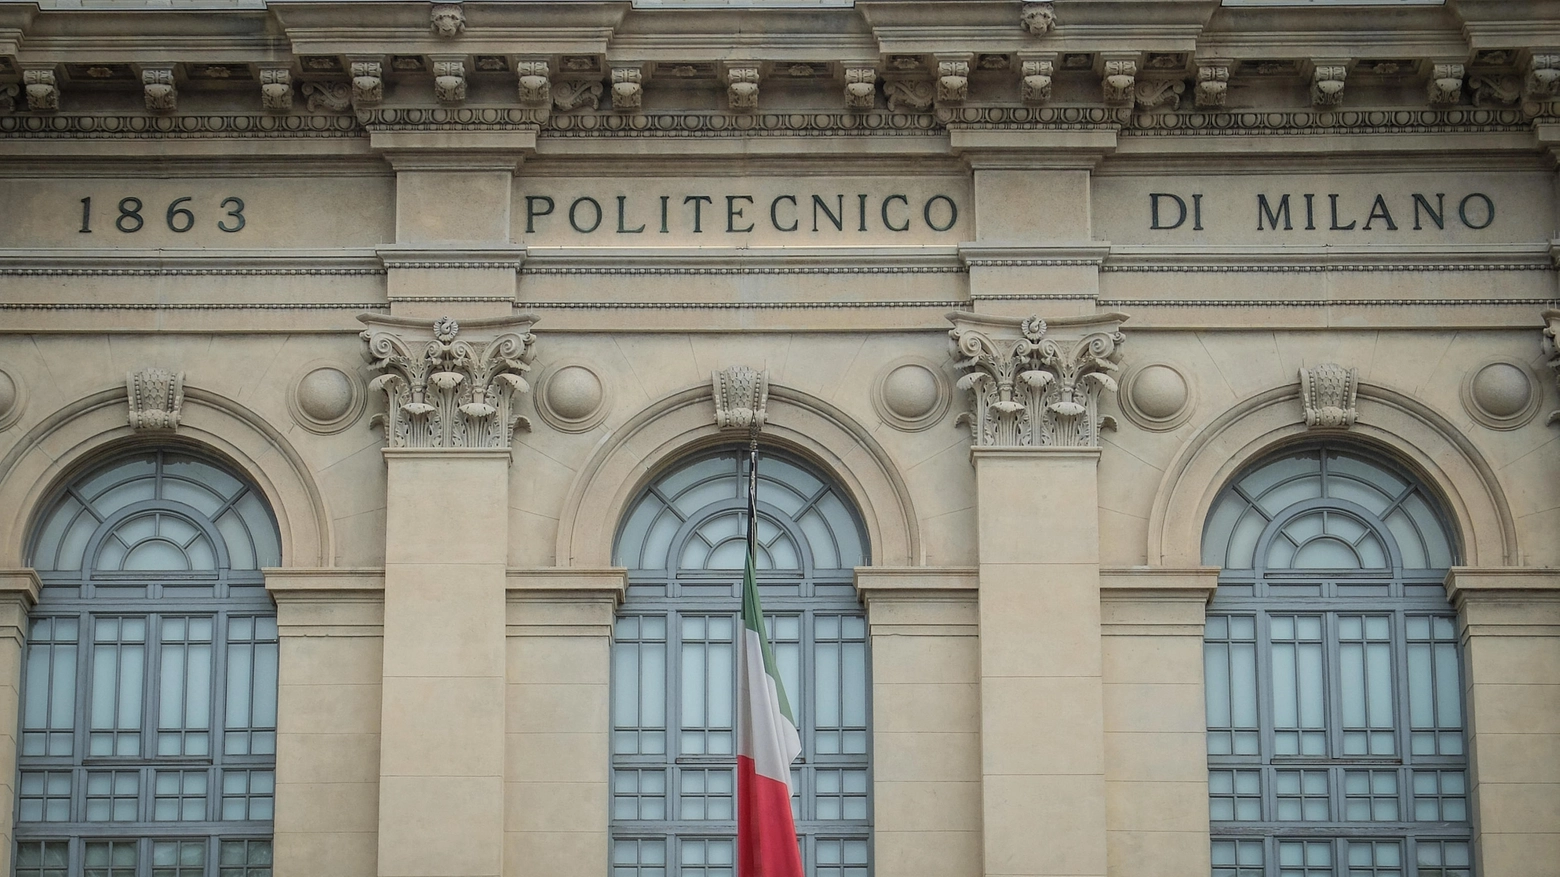 Il Politecnico di Milano si conferma il miglior ateneo italiano, tra le prime 100 anche La Sapienza, Bologna, Padova. Oxford guida la classifica, il Regno Unito domina